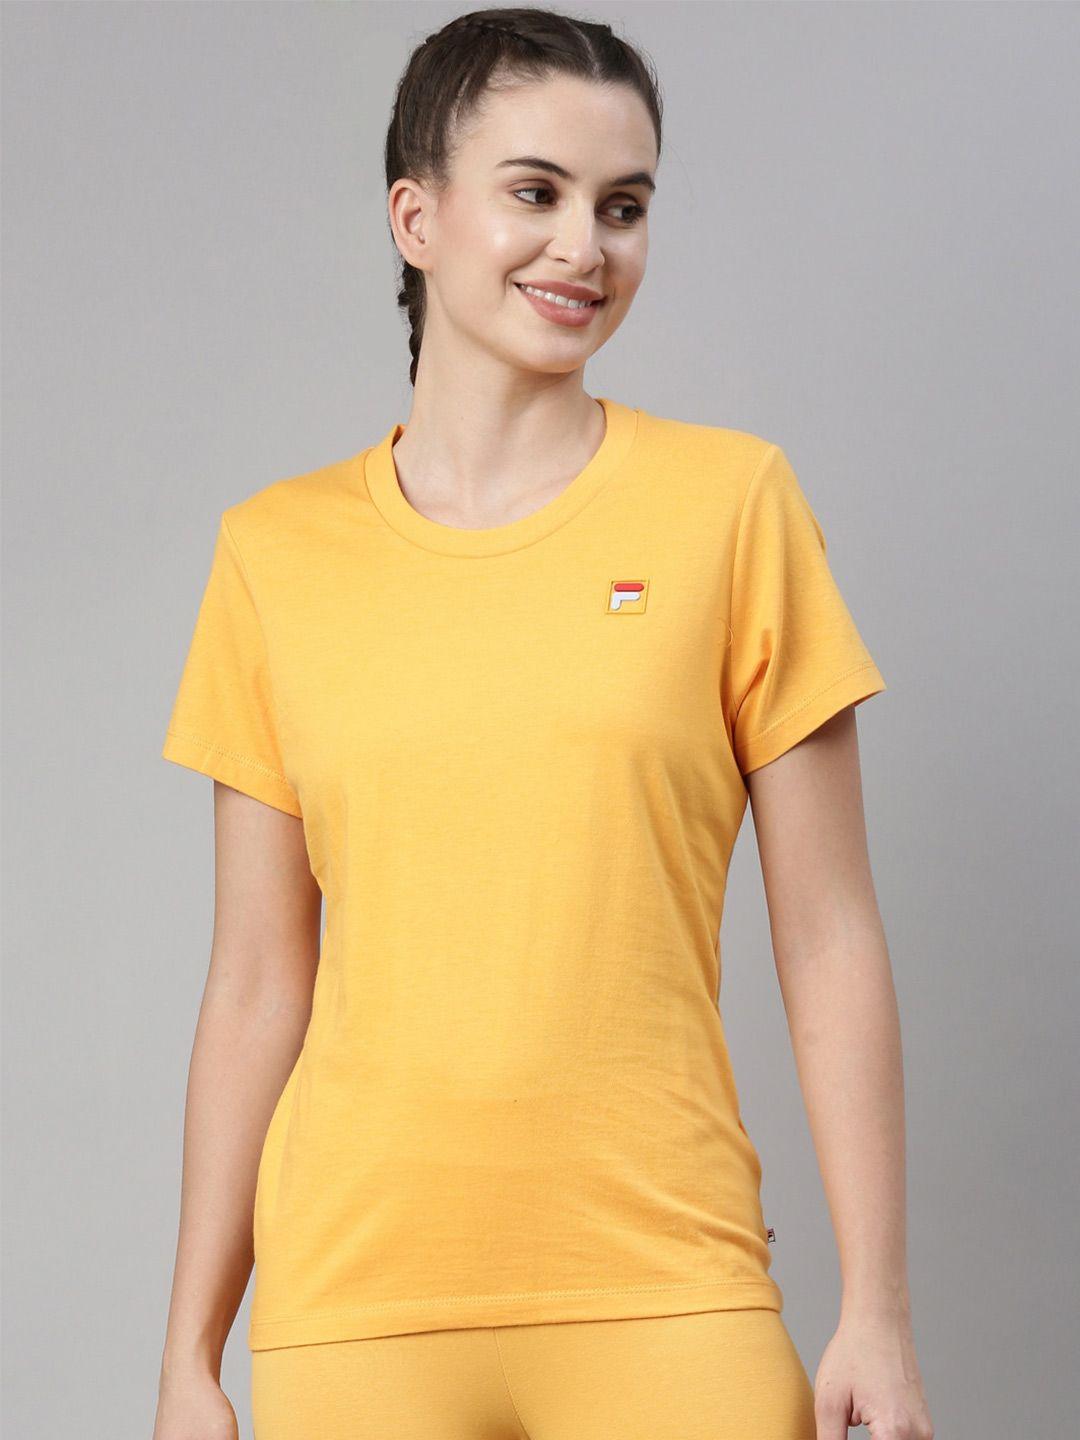 fila women yellow organic cotton training or gym t-shirt